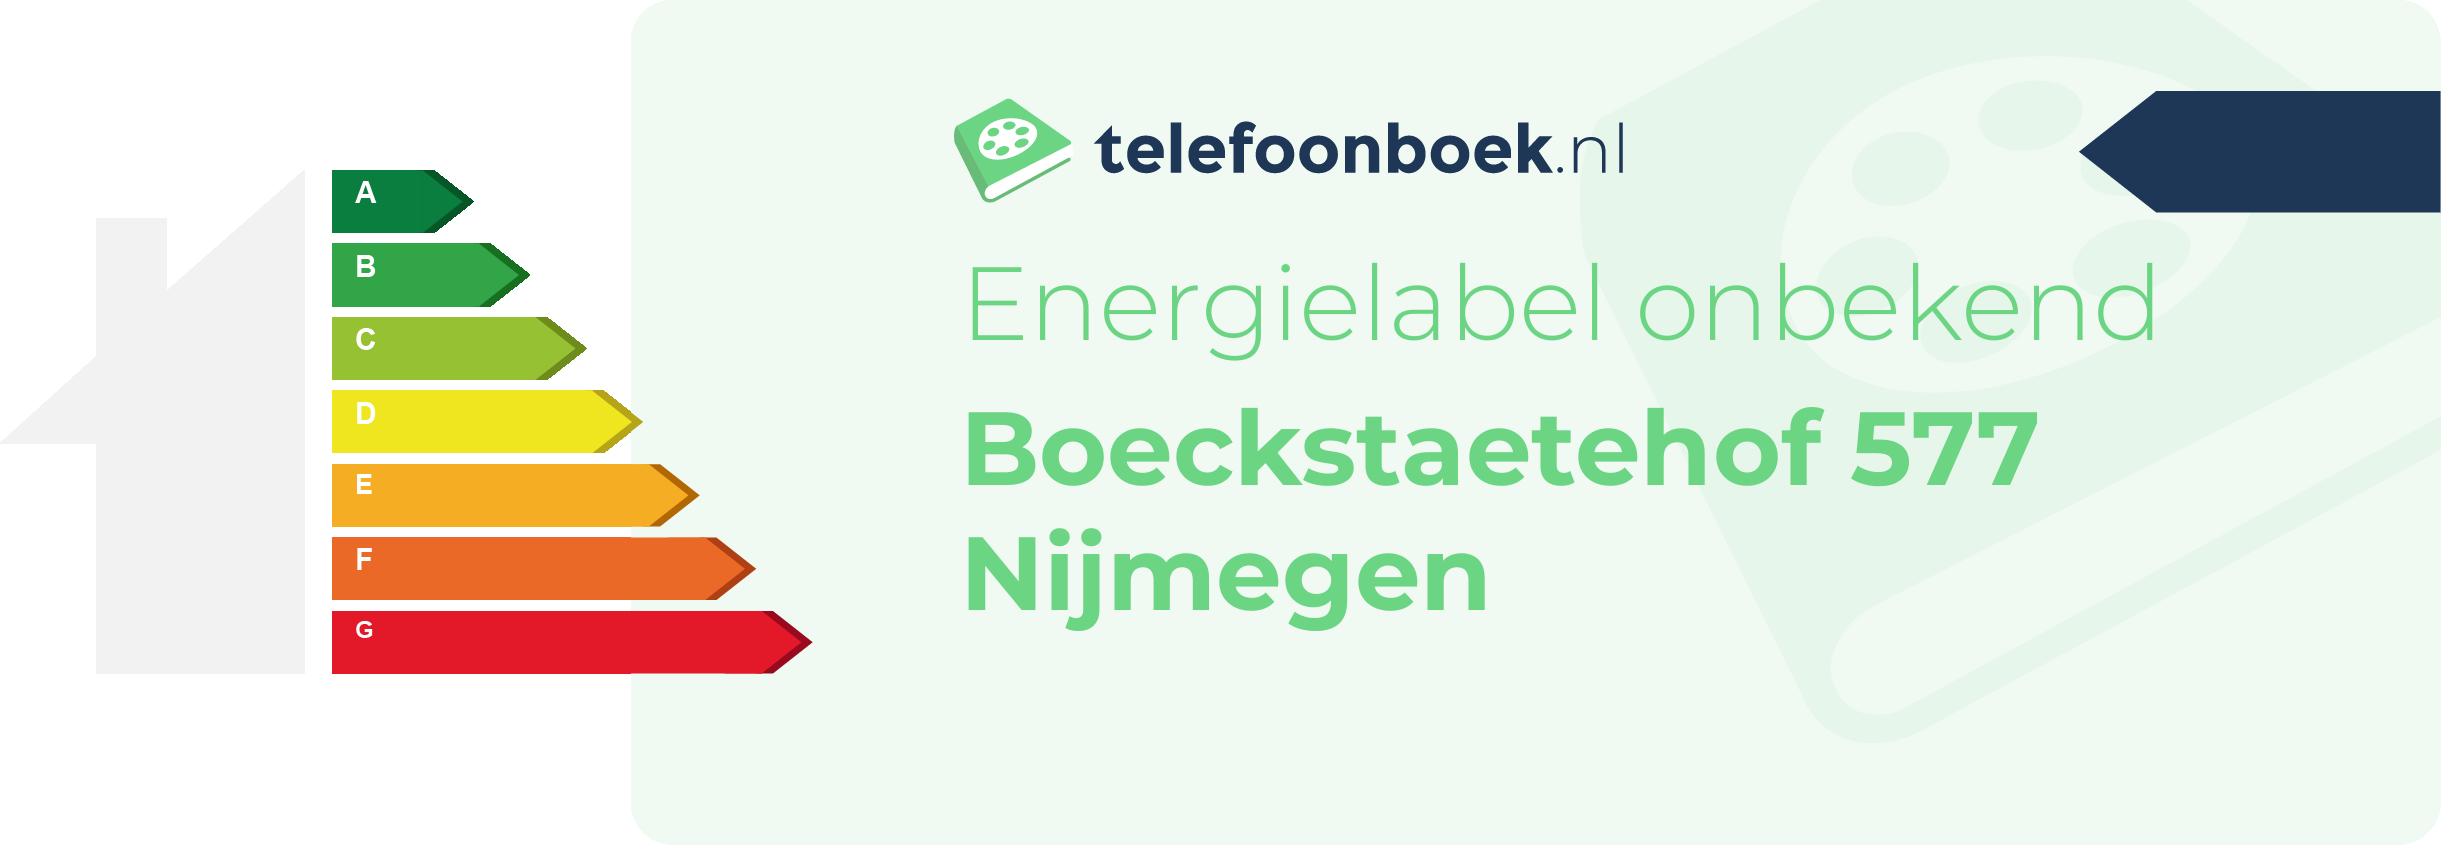 Energielabel Boeckstaetehof 577 Nijmegen